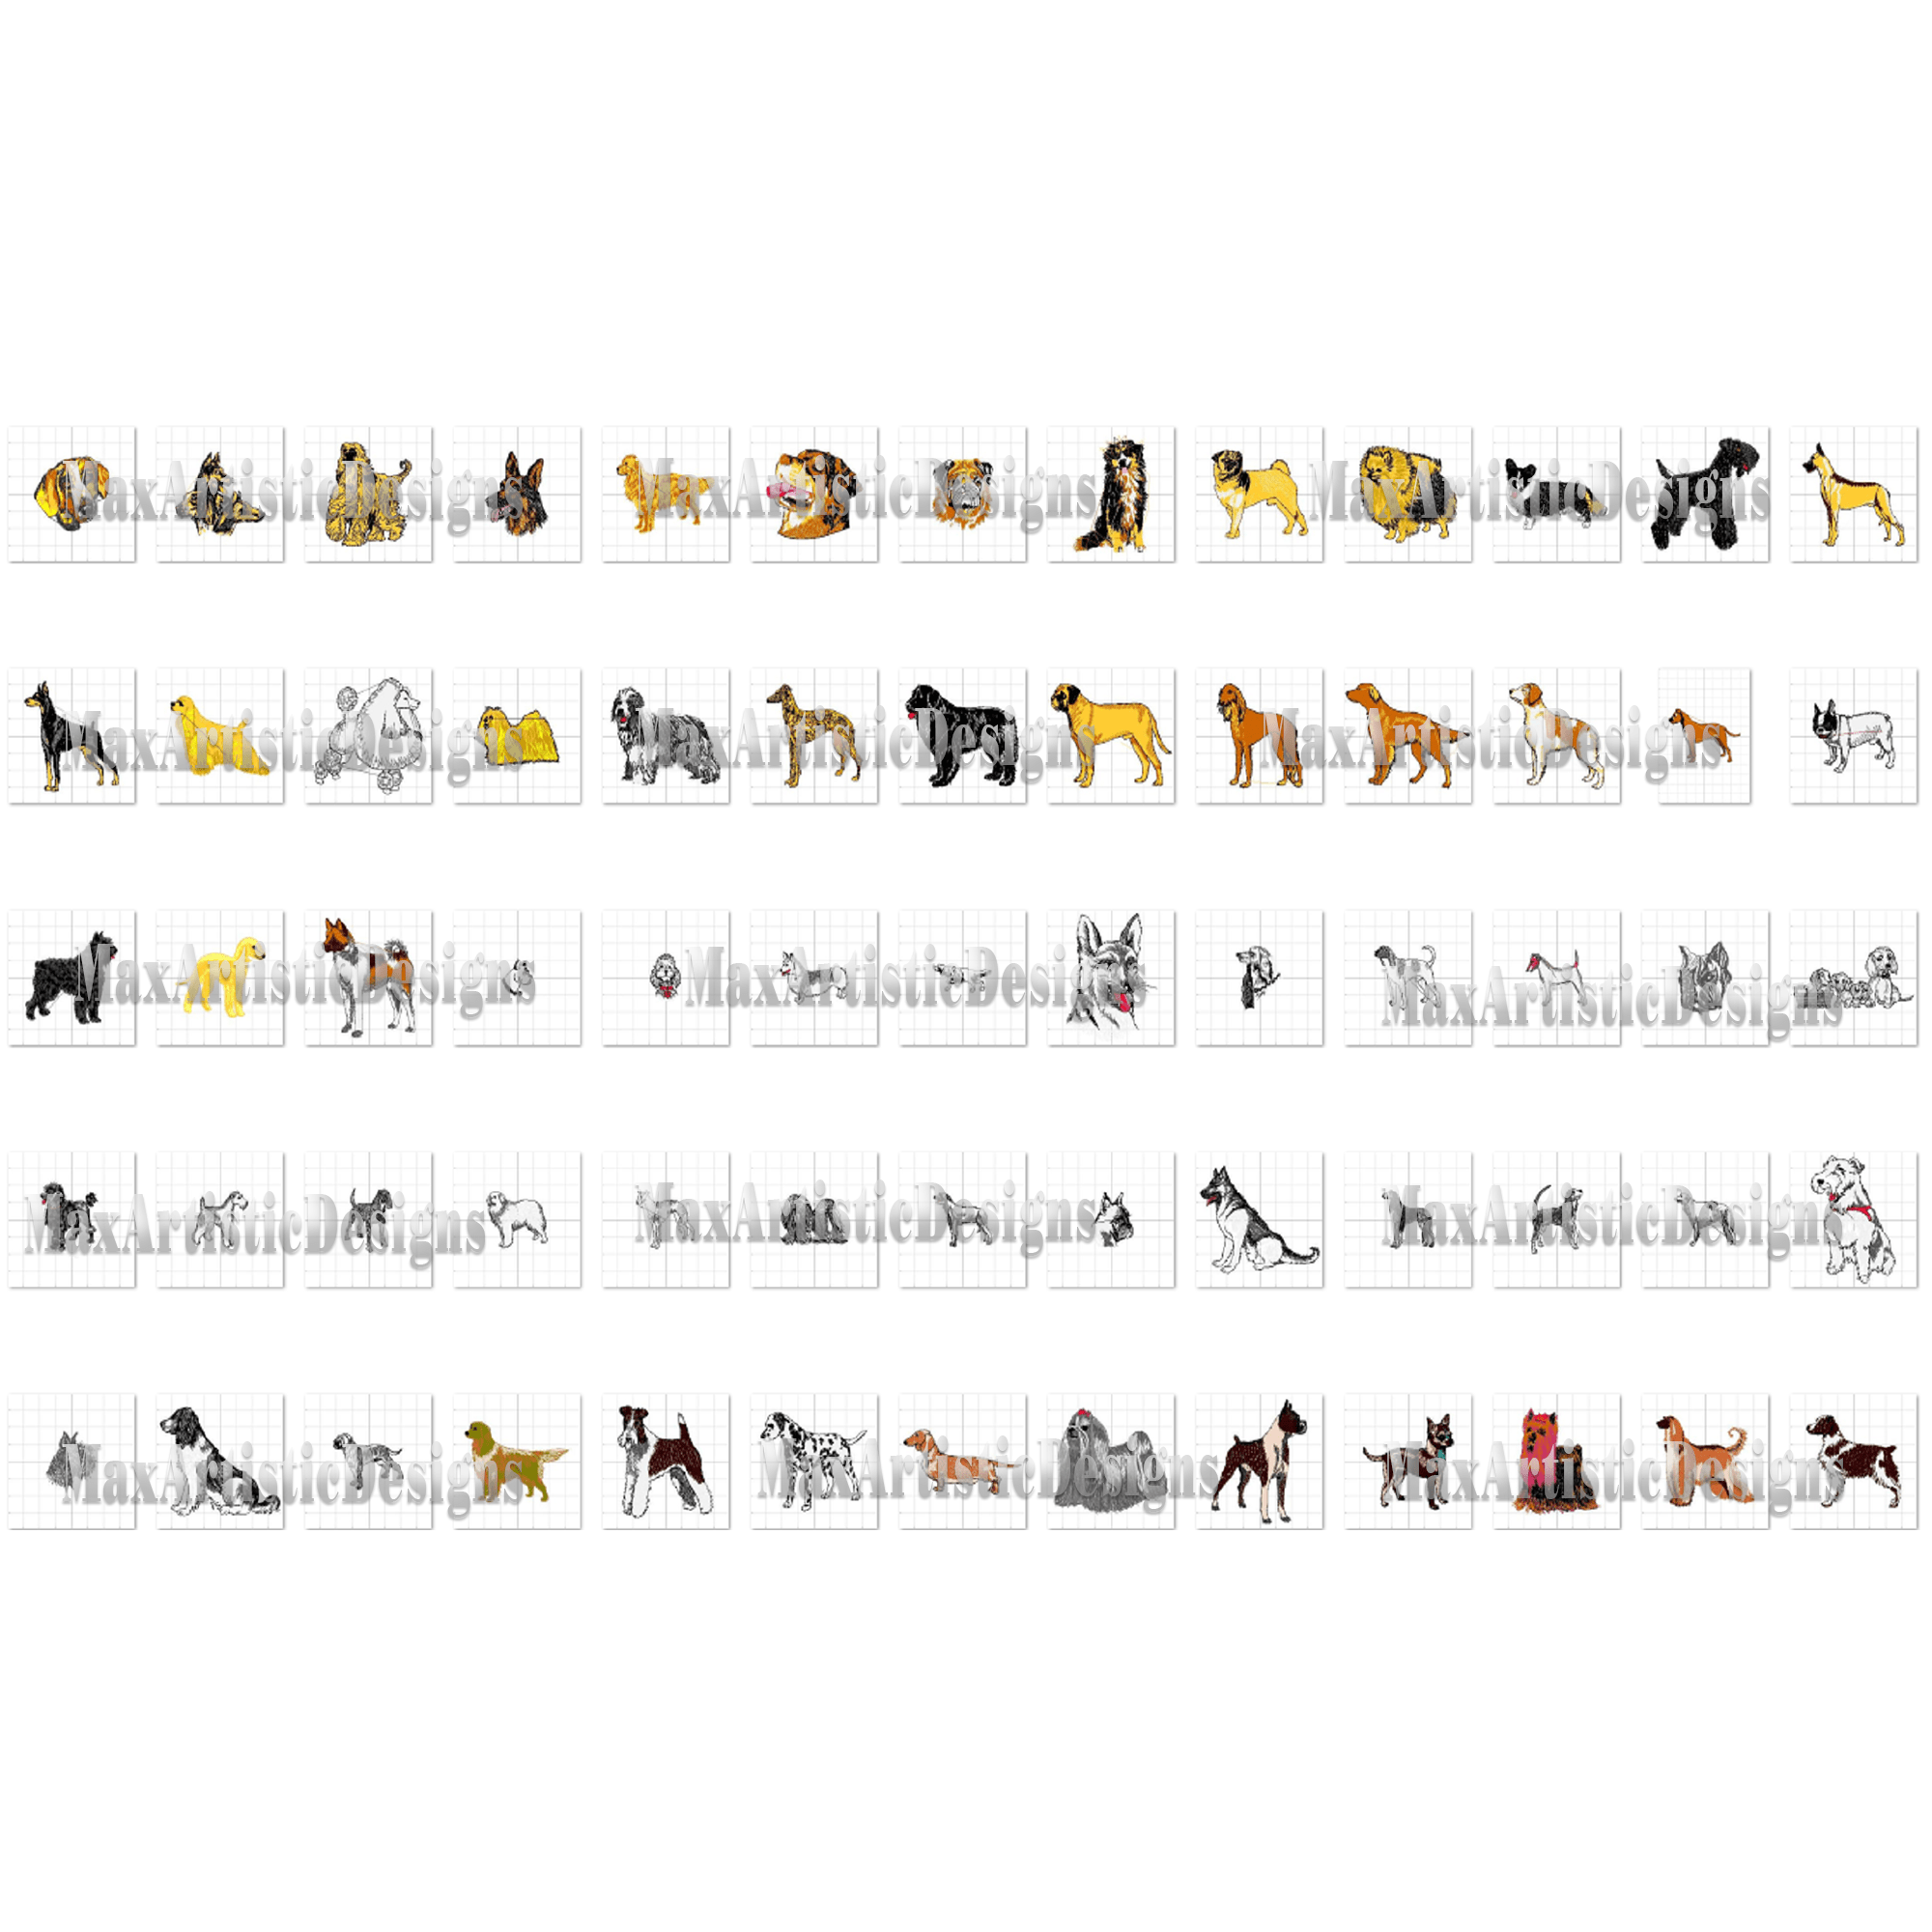 Oltre 550 disegni di ricamo di cani per ricamo a macchina in formato pes jpg scaricabile